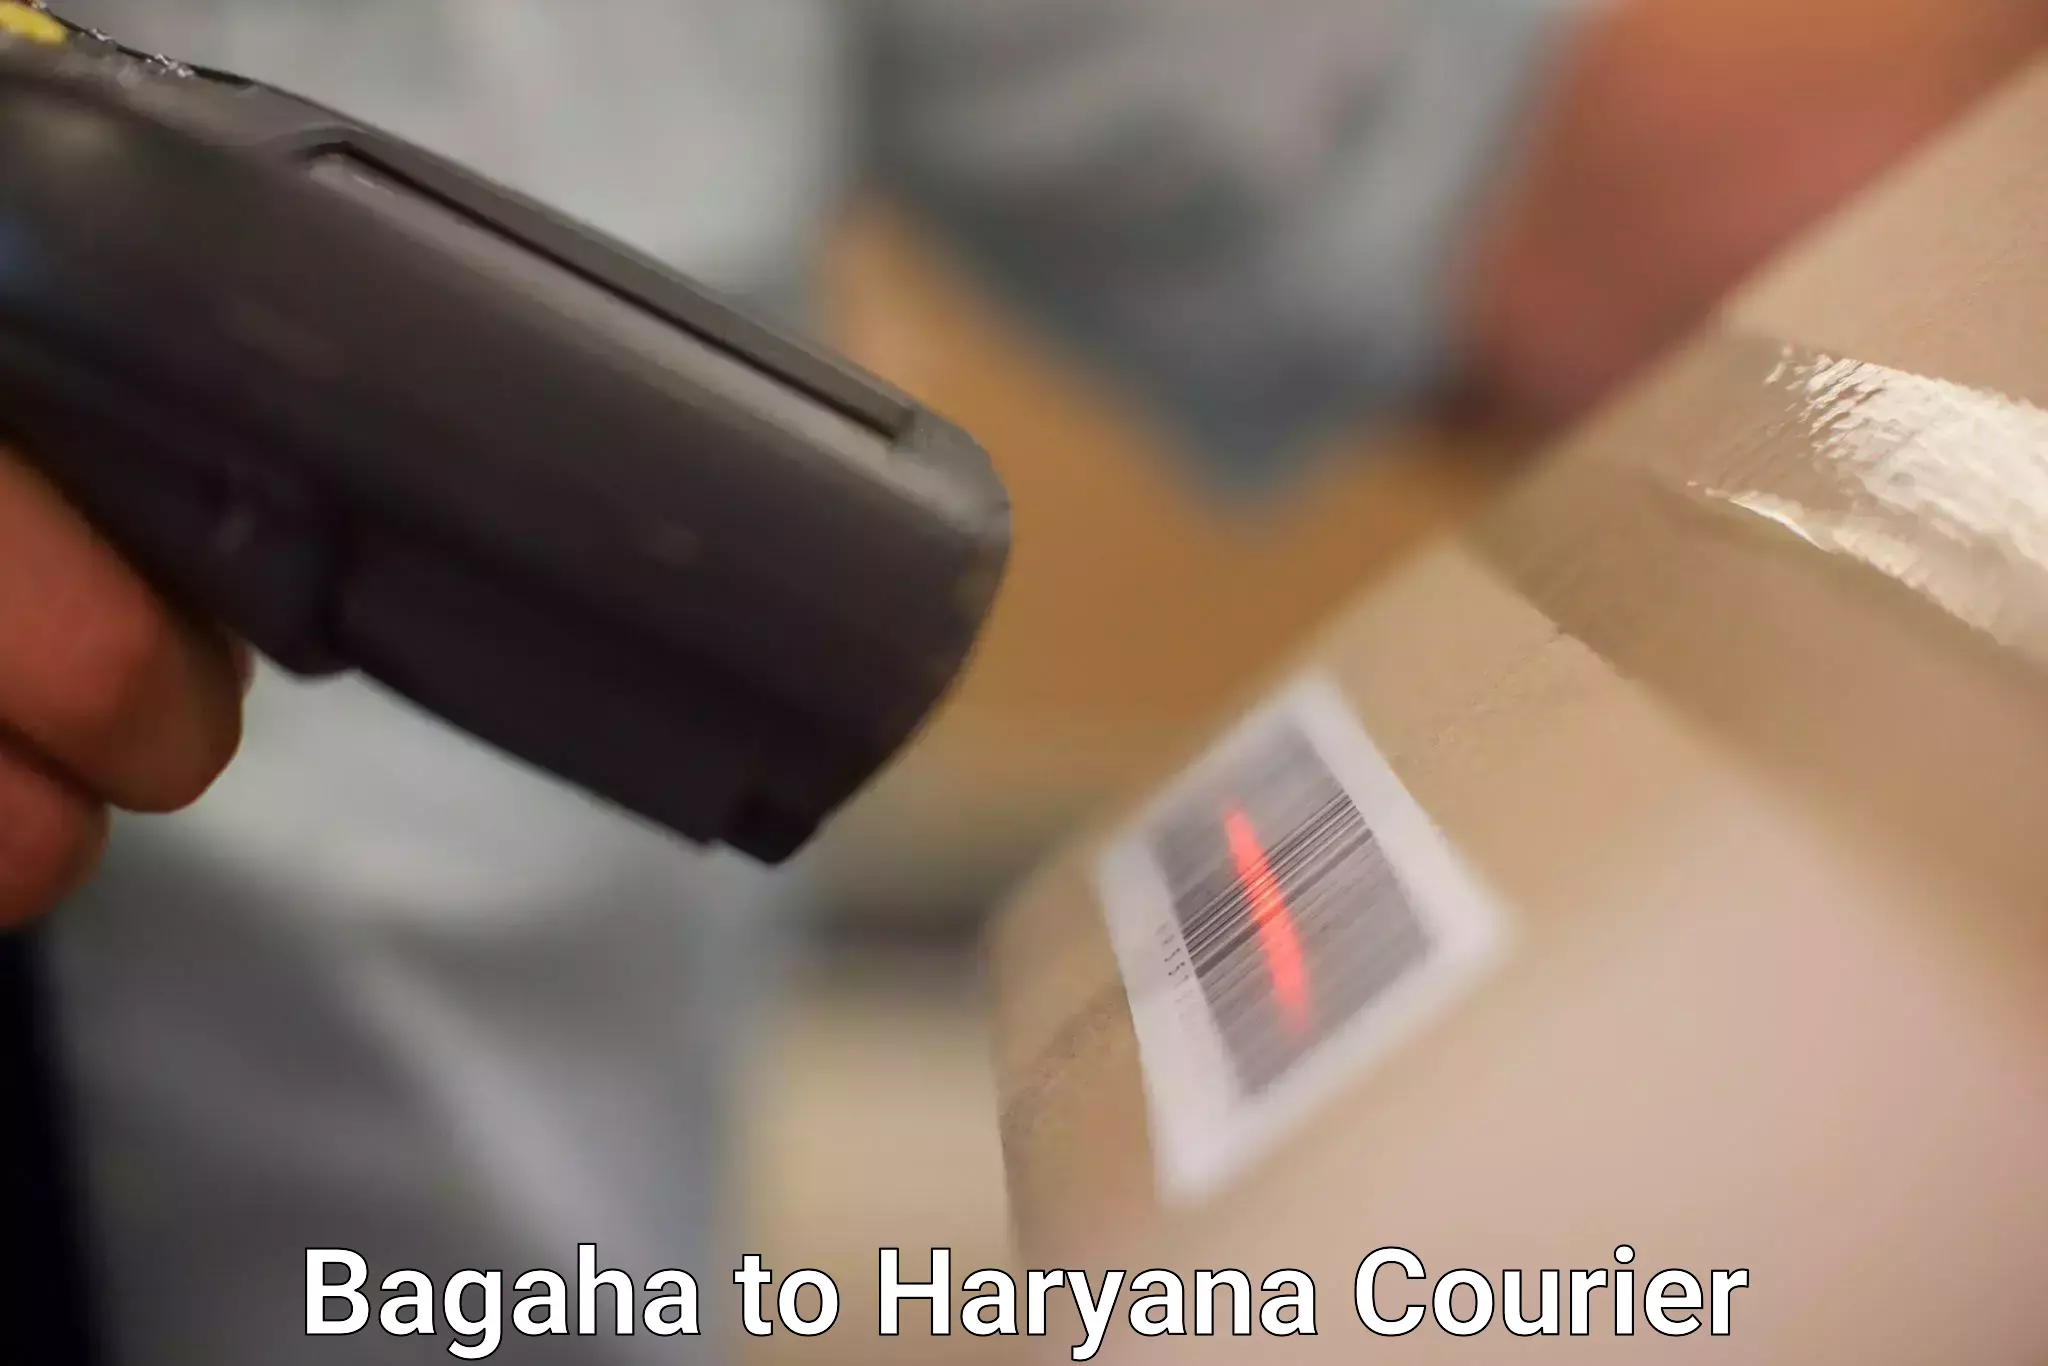 Efficient shipping platforms Bagaha to Hansi